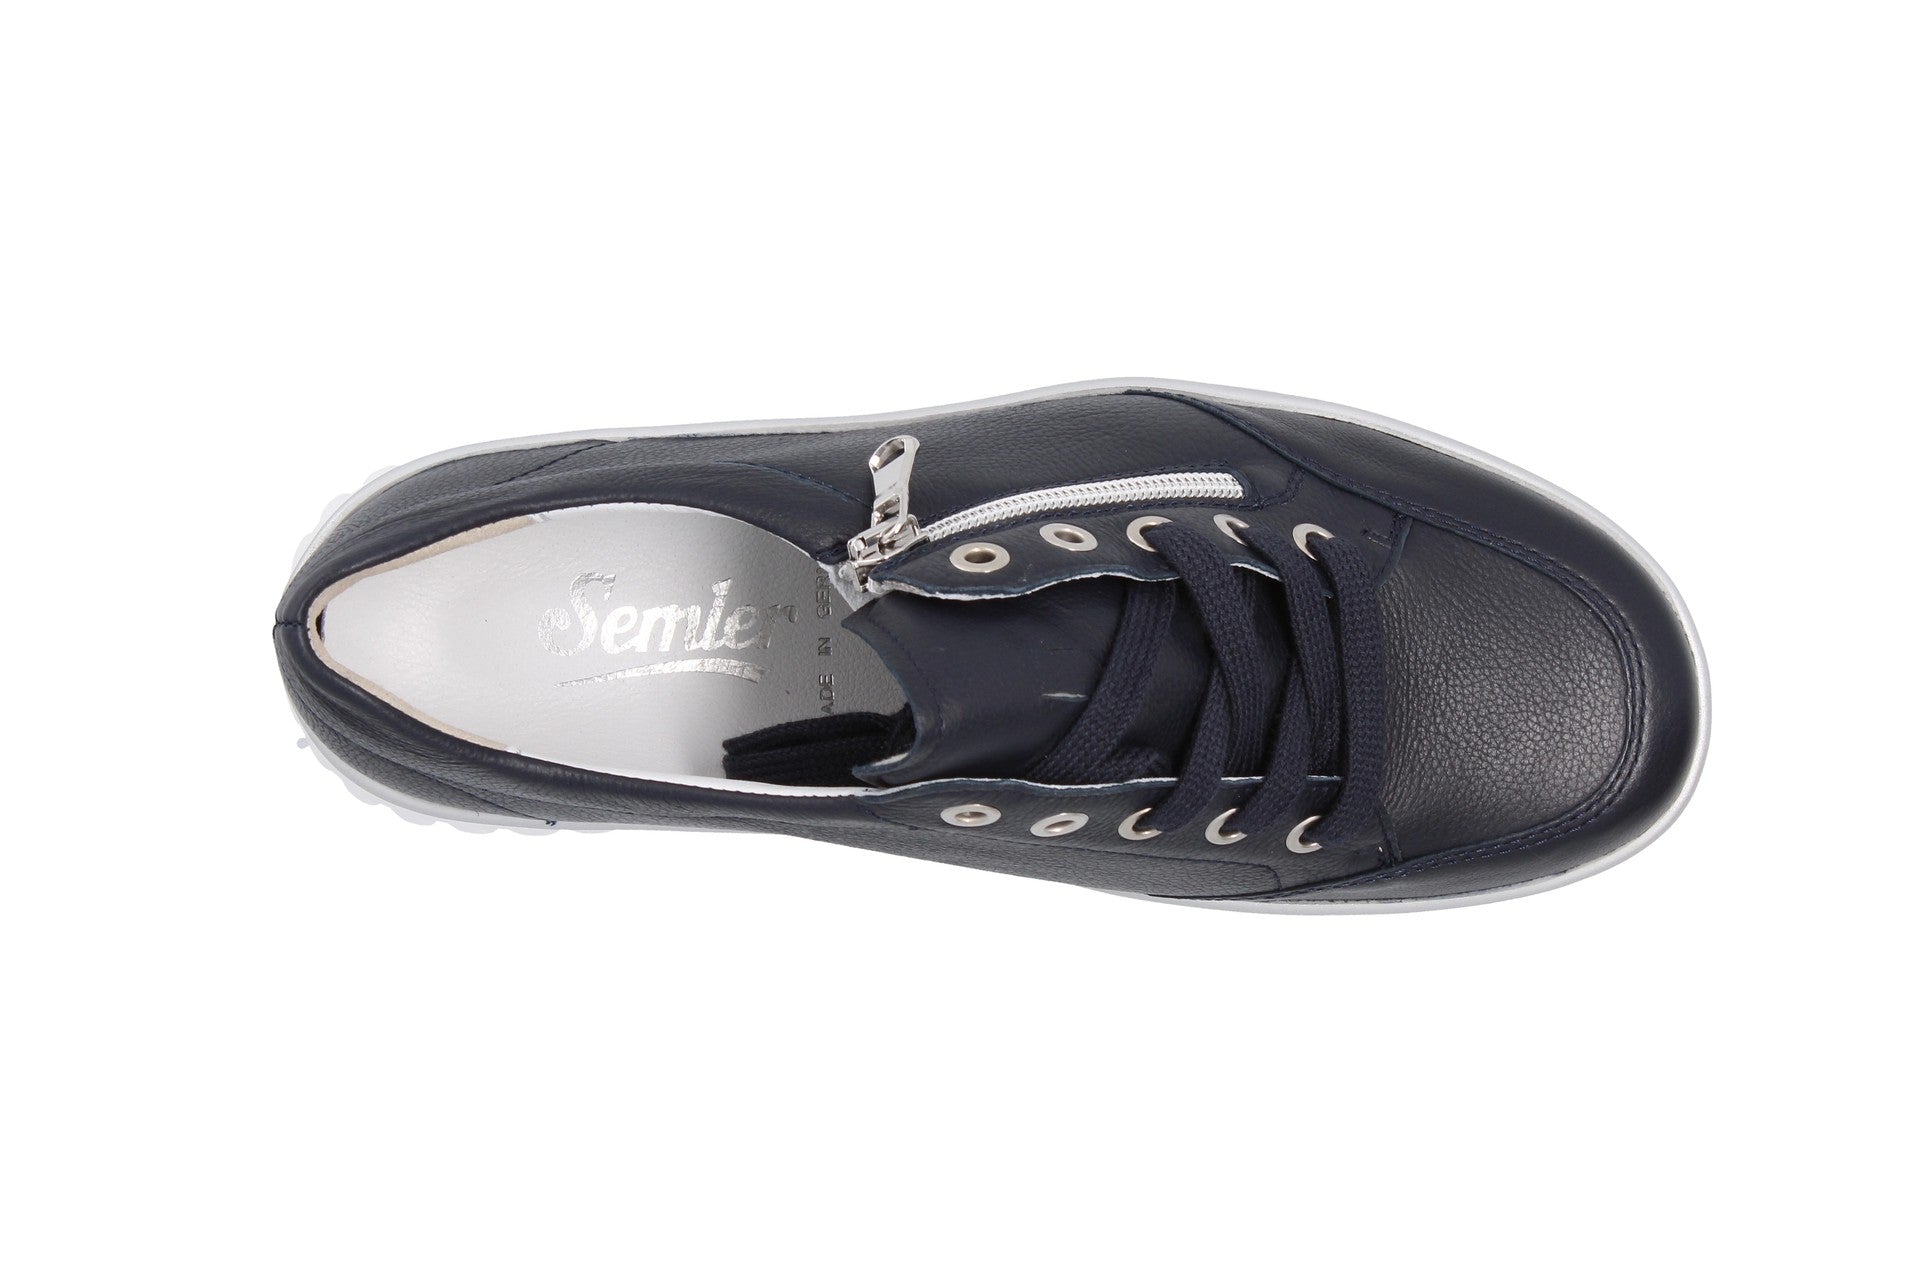 Lena – ocean – lace-up shoe